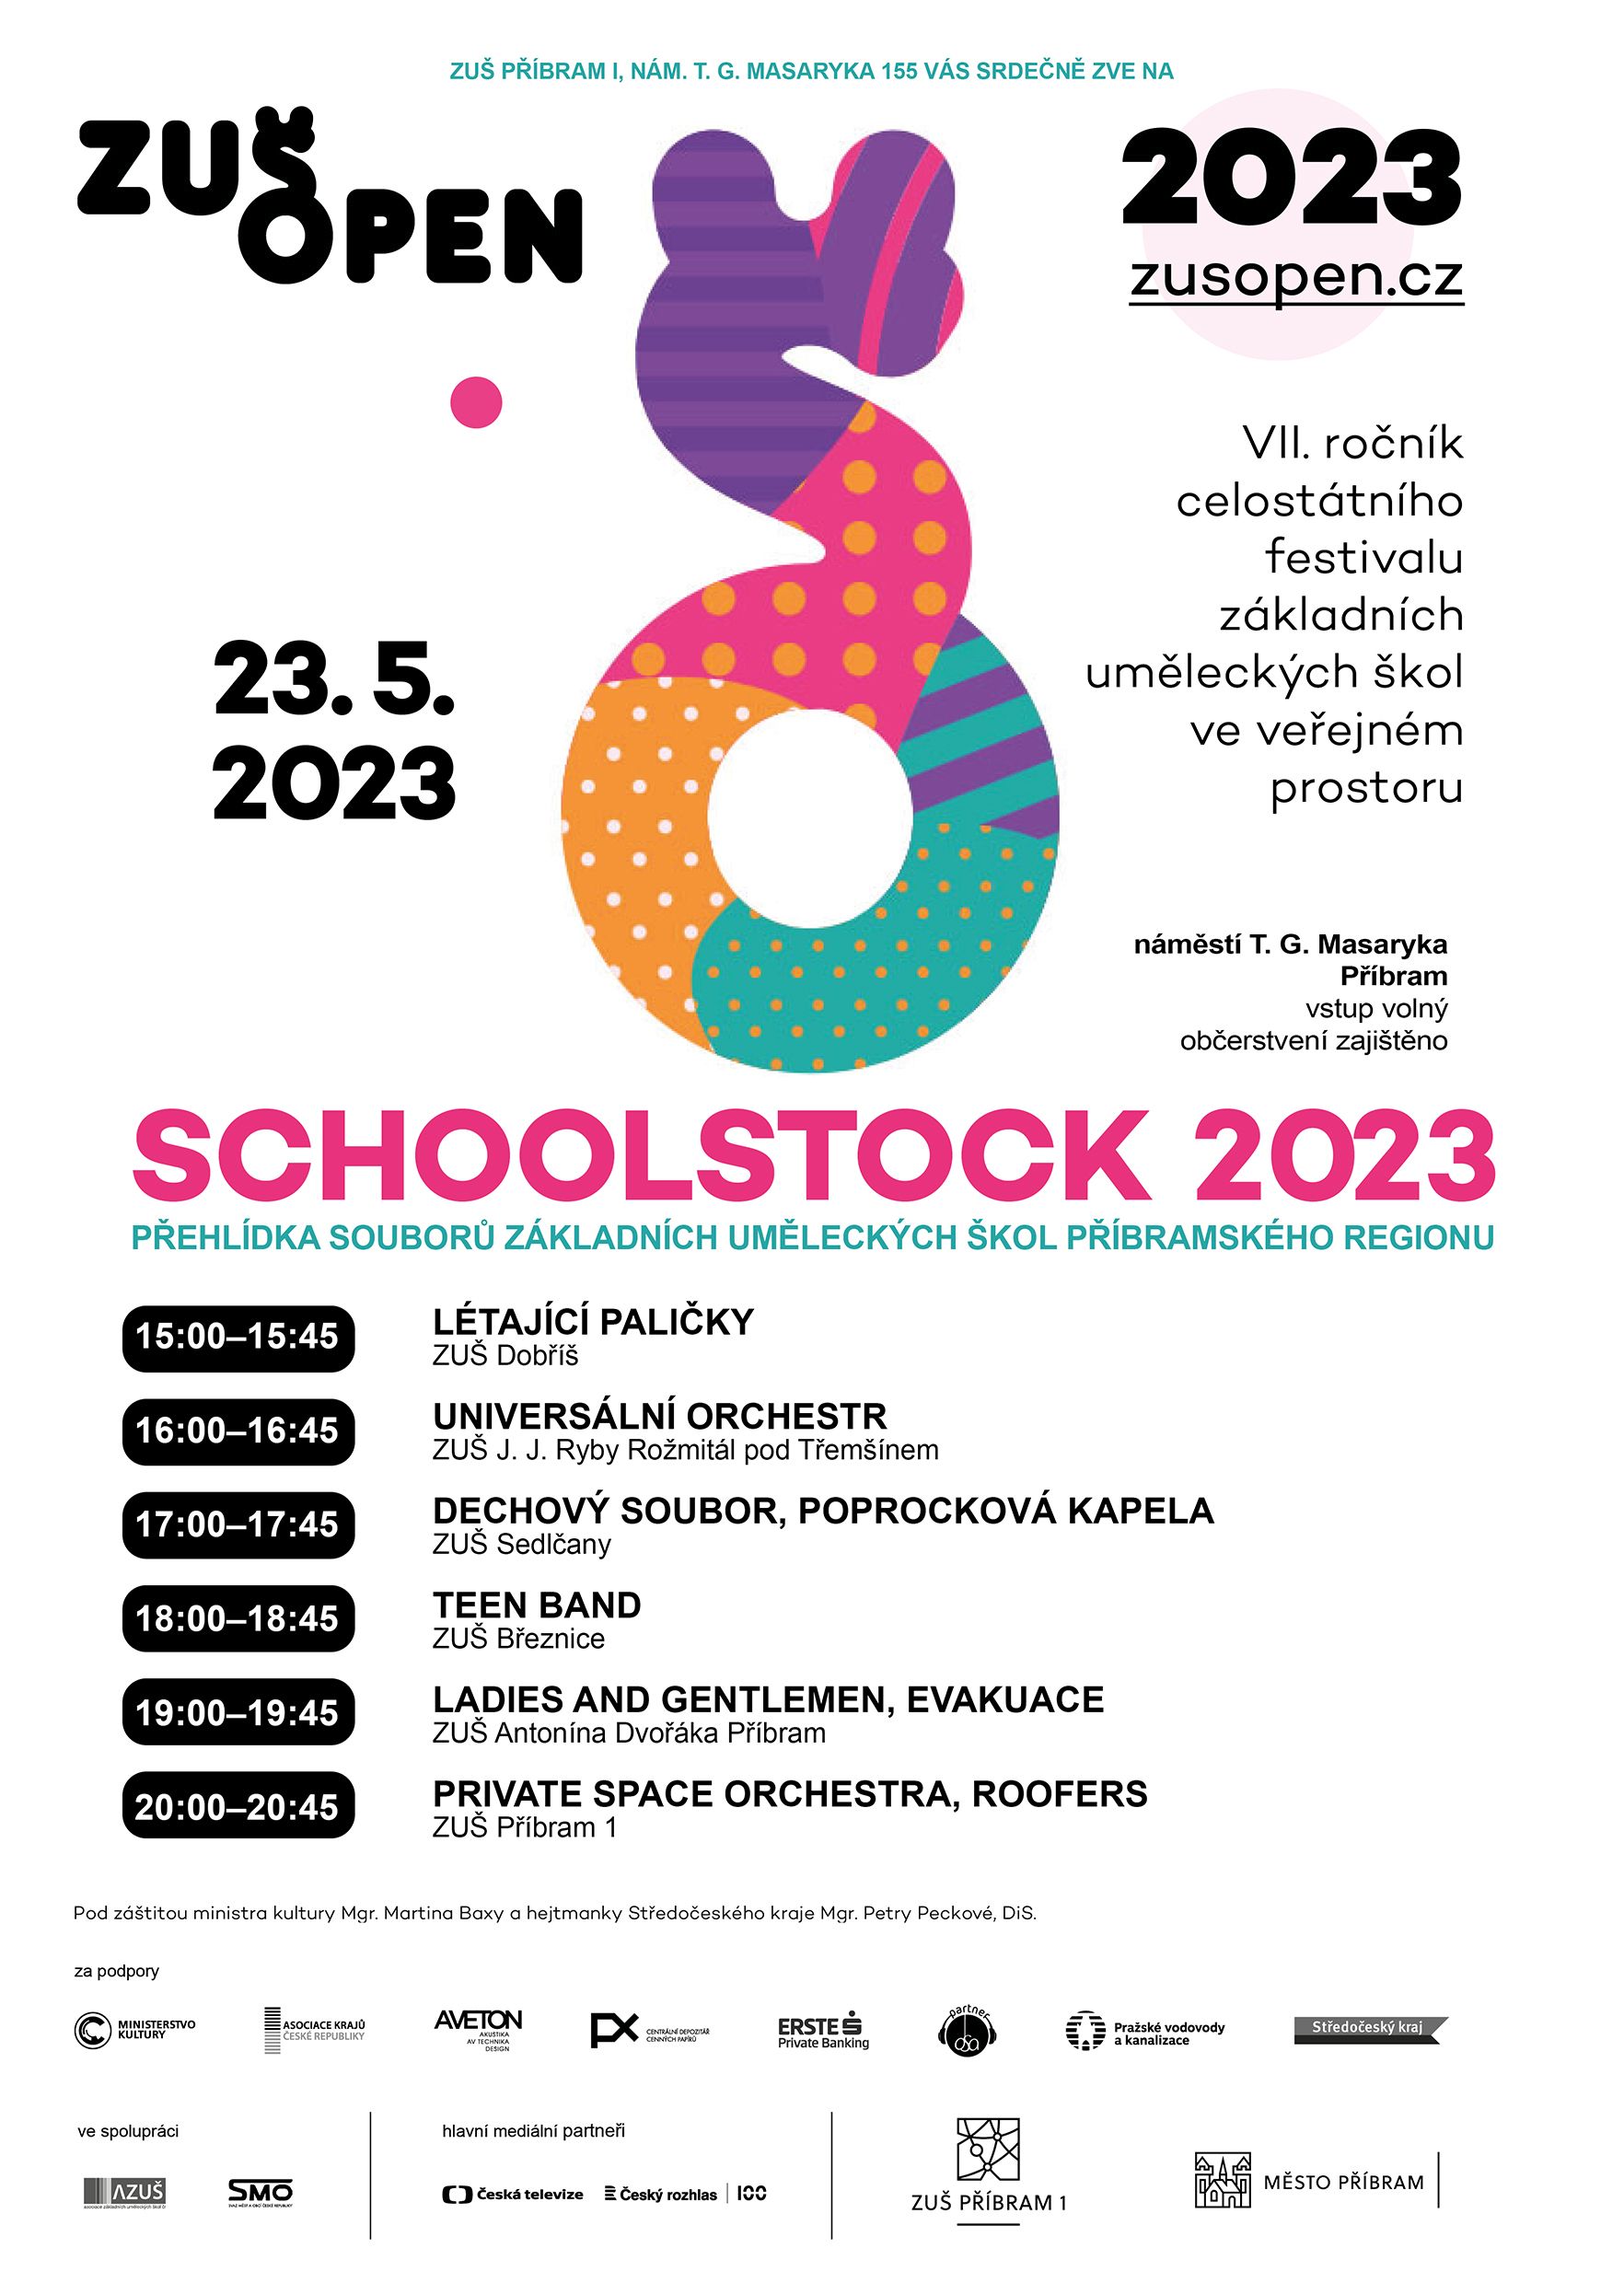 Schoolstock 2023